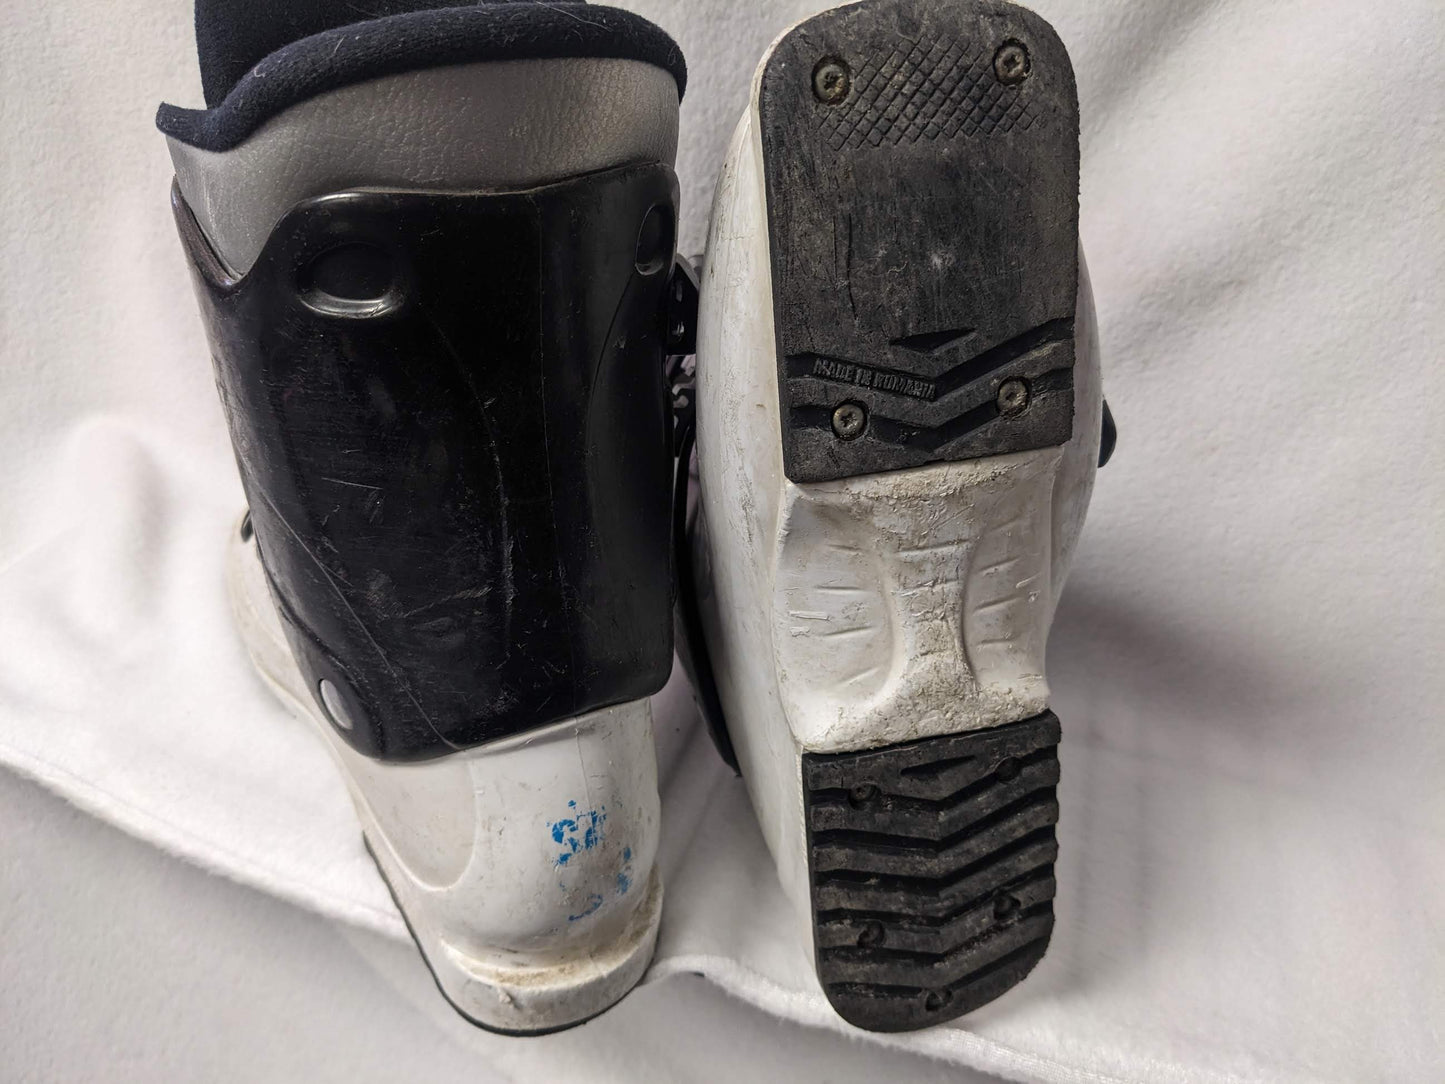 Salomon SPK Ski Boots Size 24.5 Color White Condition Used